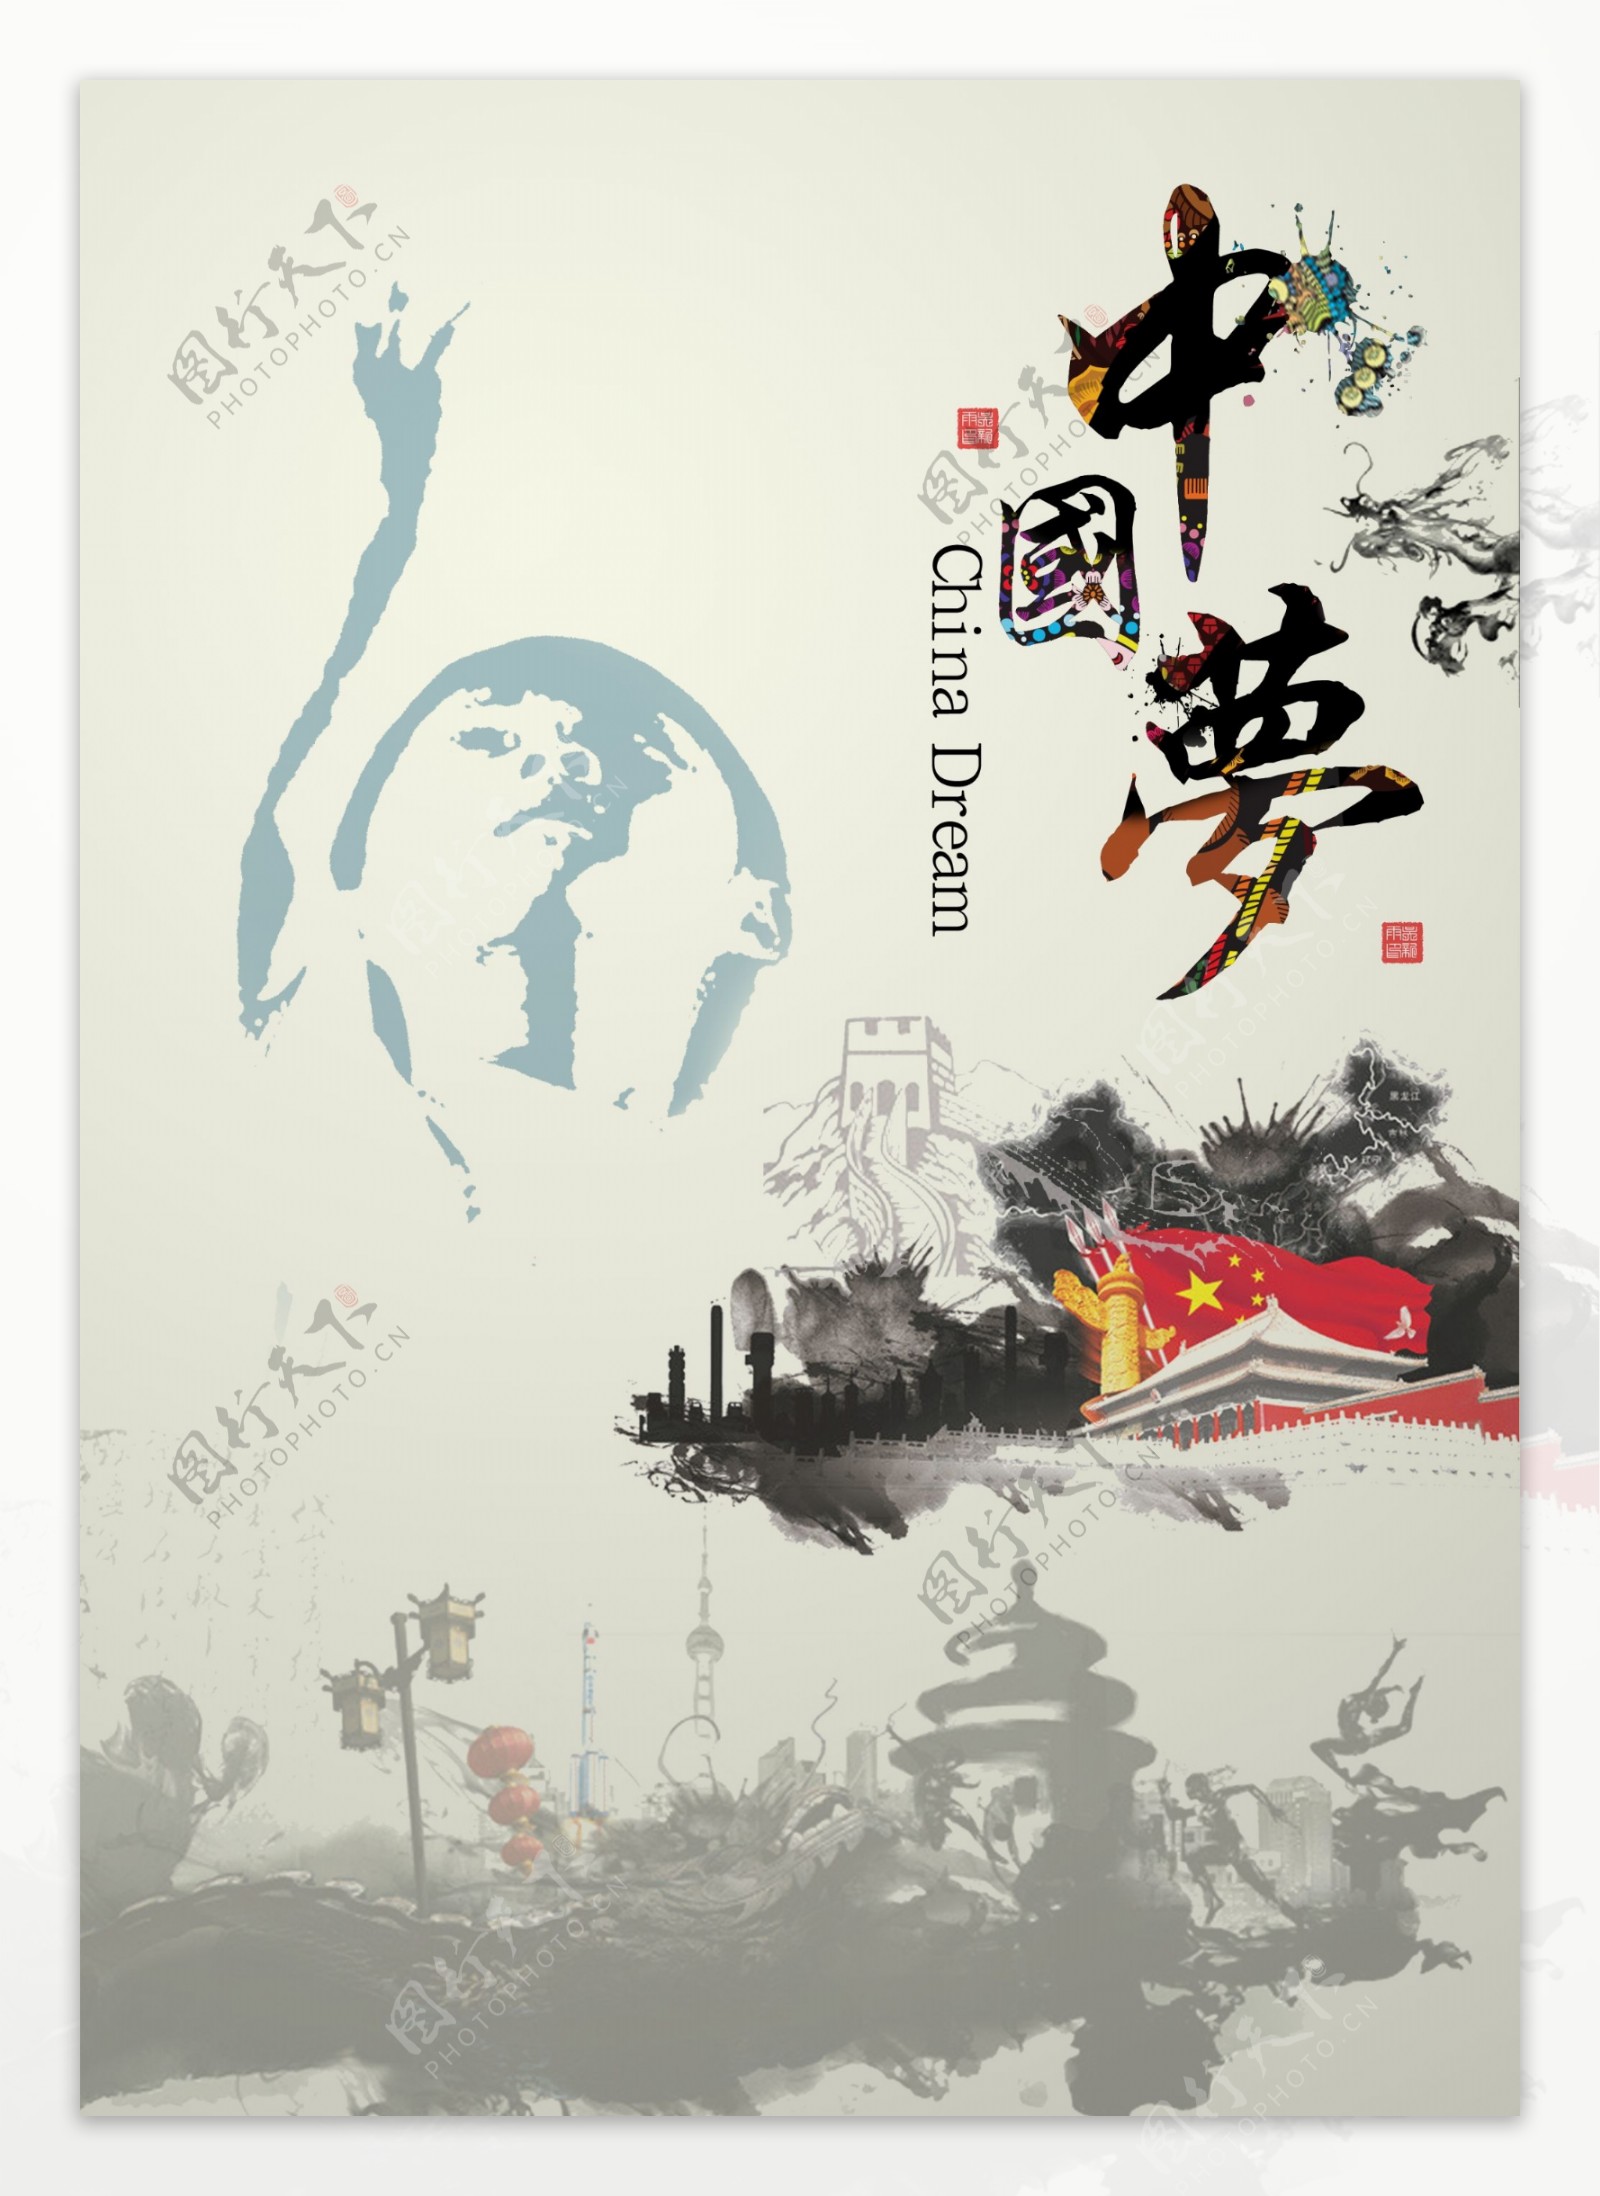 中国梦海报设计